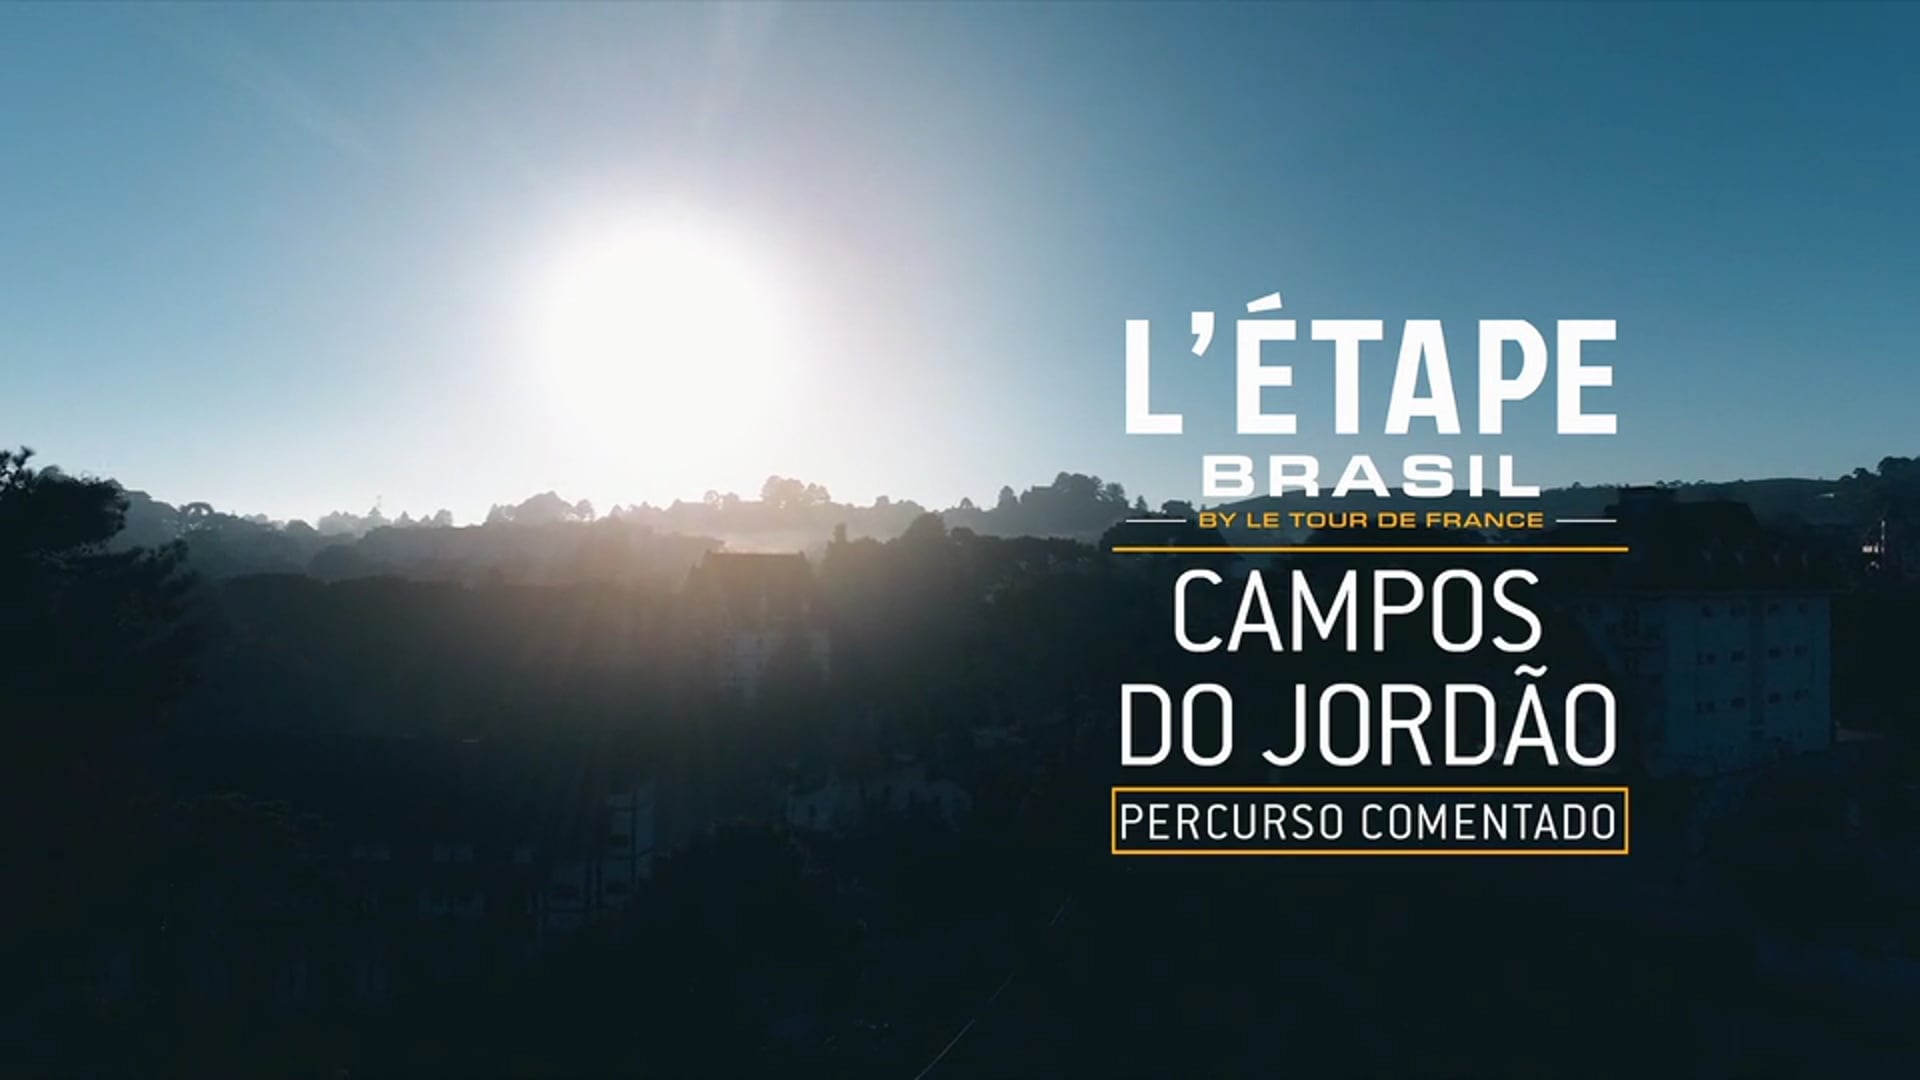 L'etape Brasil Campos do Jordão 2018 - Percurso Comentado